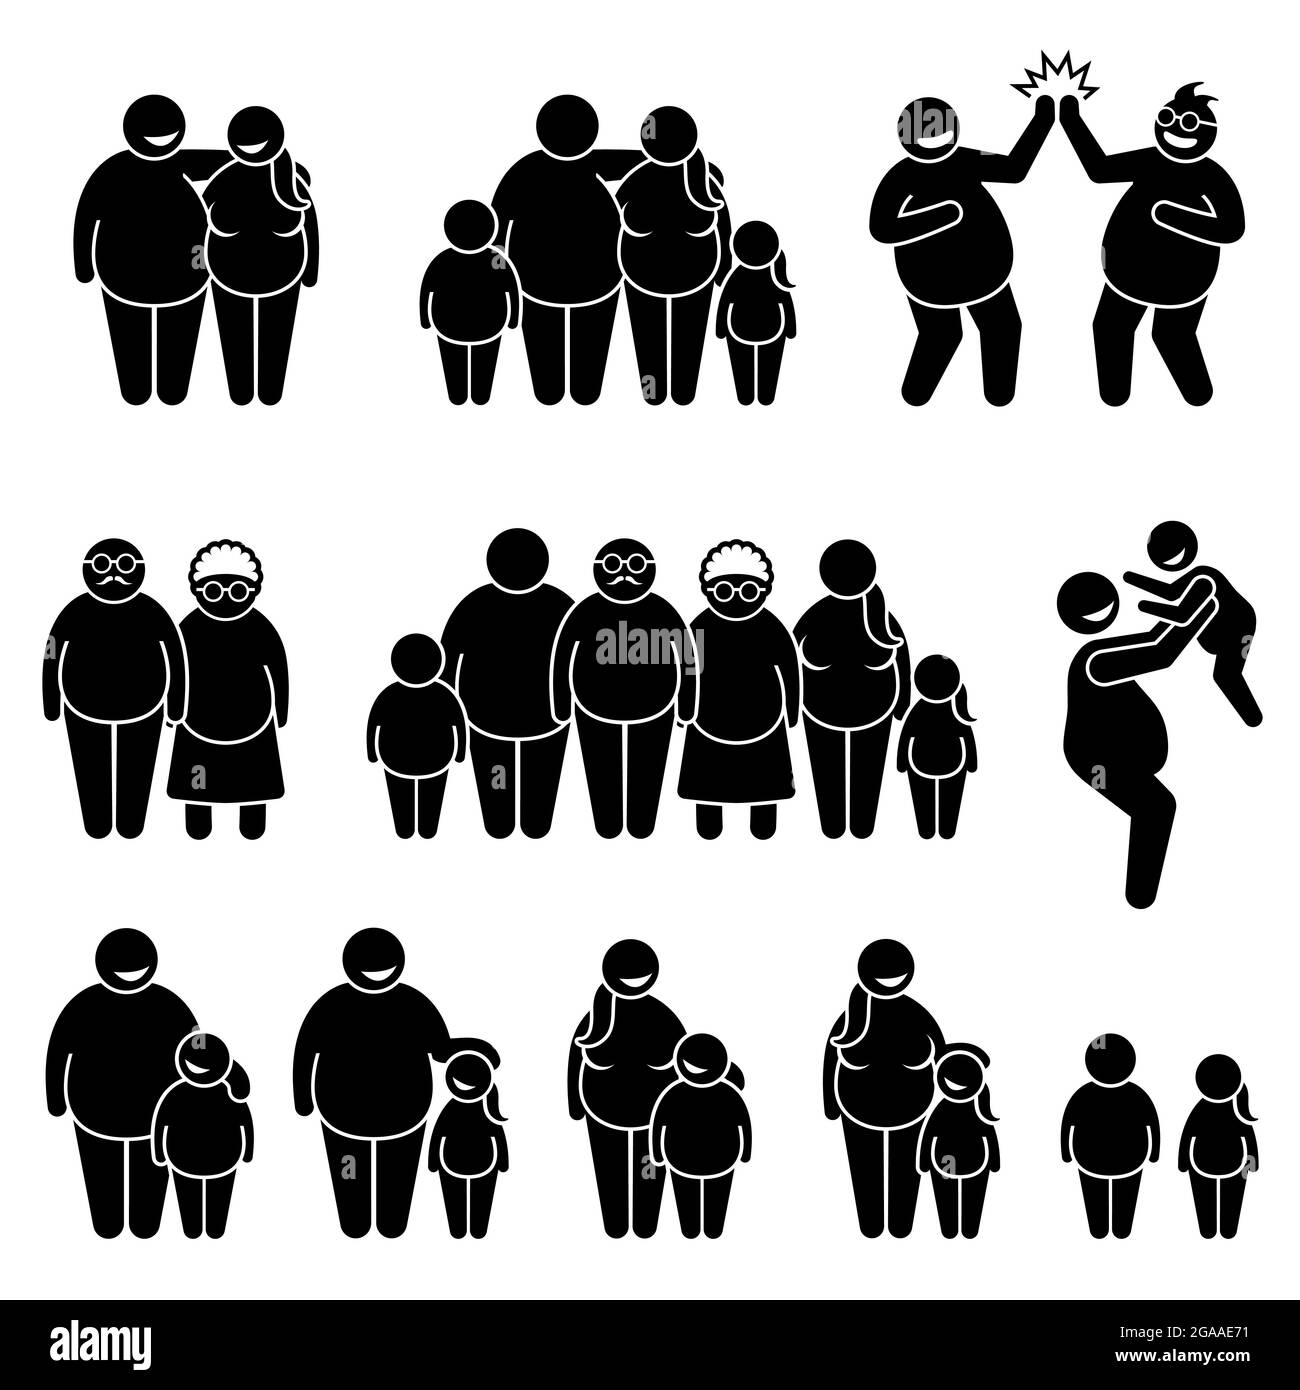 Famiglia di grasso obese sovrappeso persone in piedi insieme bastone figura pittogramma icone. Le illustrazioni vettoriali rappresentano la coppia grassa, la famiglia, il genitore, gli amici, Illustrazione Vettoriale